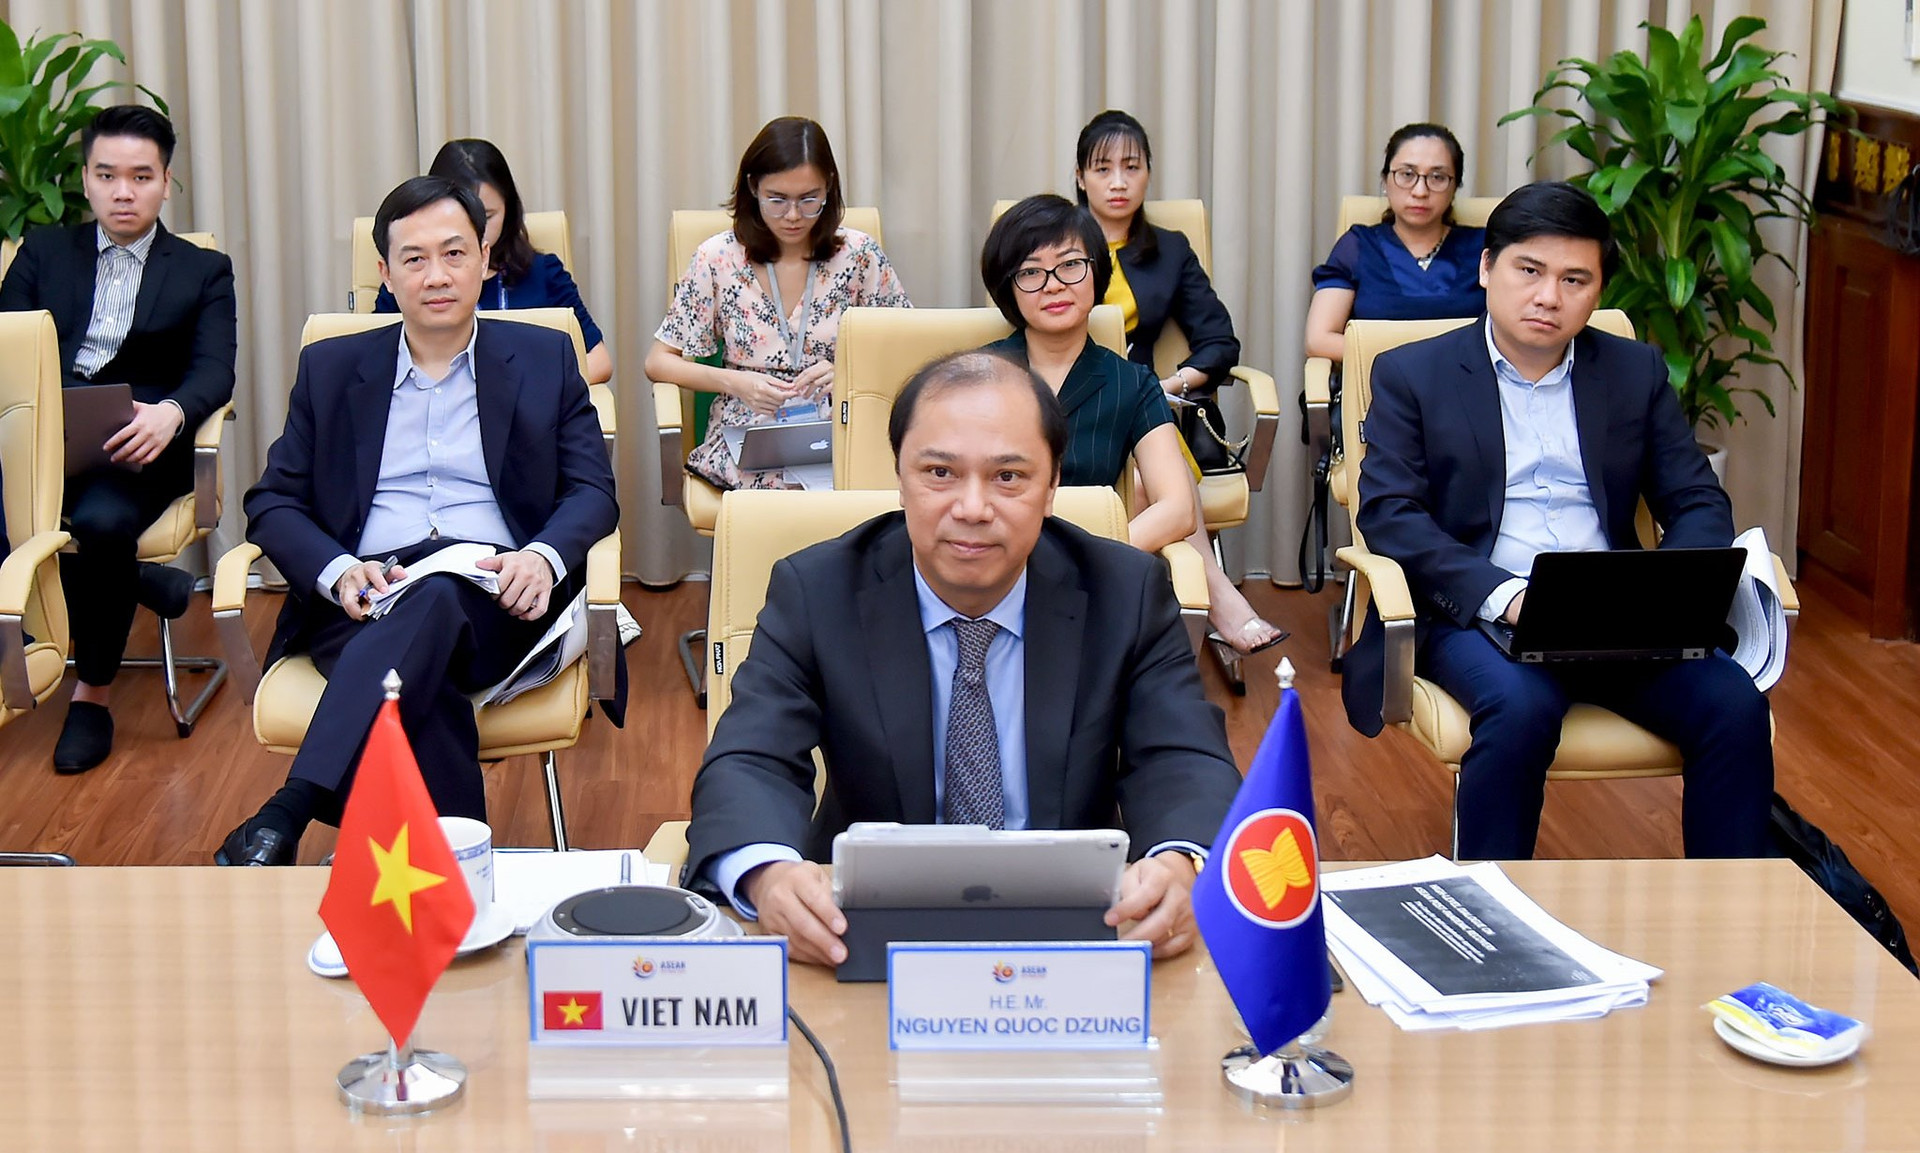 Phục hồi sau đại dịch COVID-19: Hướng tới một Cộng đồng ASEAN mạnh mẽ hơn